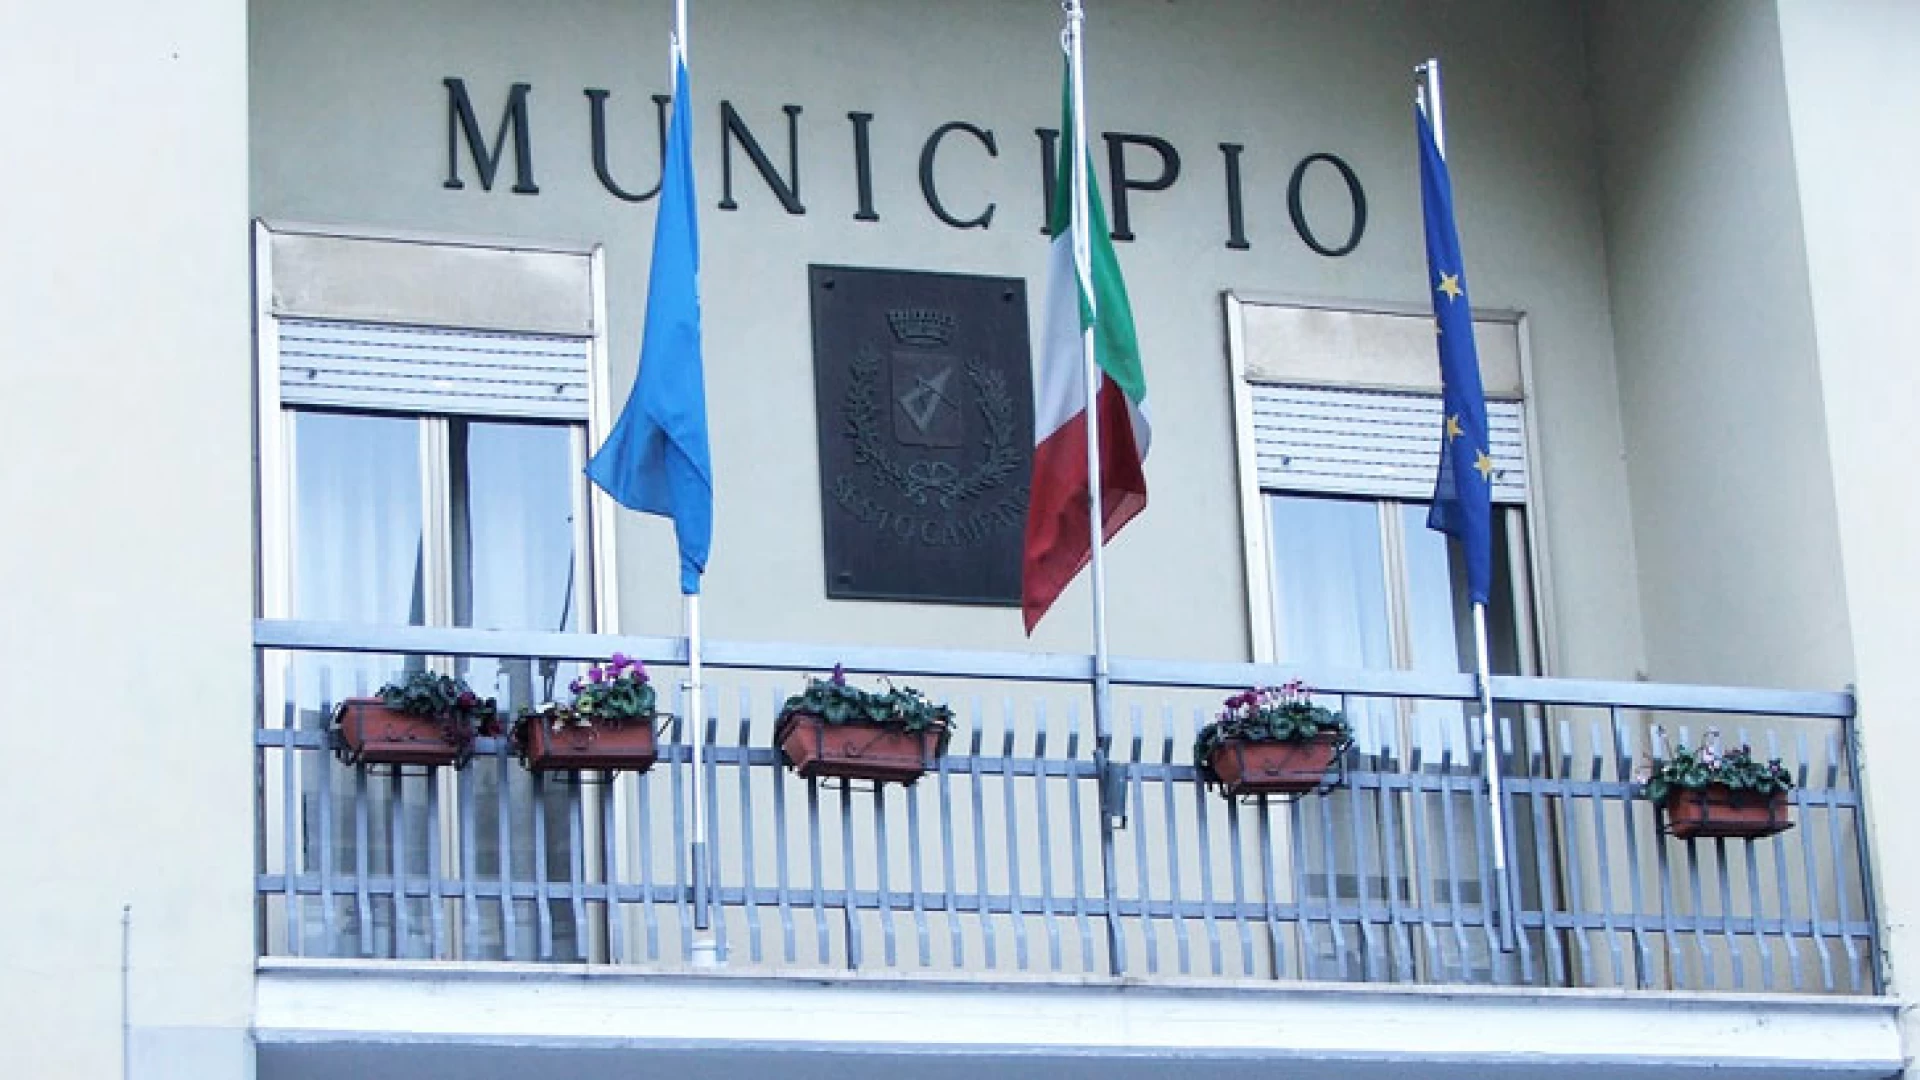 Sesto Campano: il sindaco Luigi Paolone chiude la scuola media. “Dopo aver terminato le opportune verifiche gli alunni riprenderanno le lezioni”. Il sisma di martedì avvertito anche in paese.